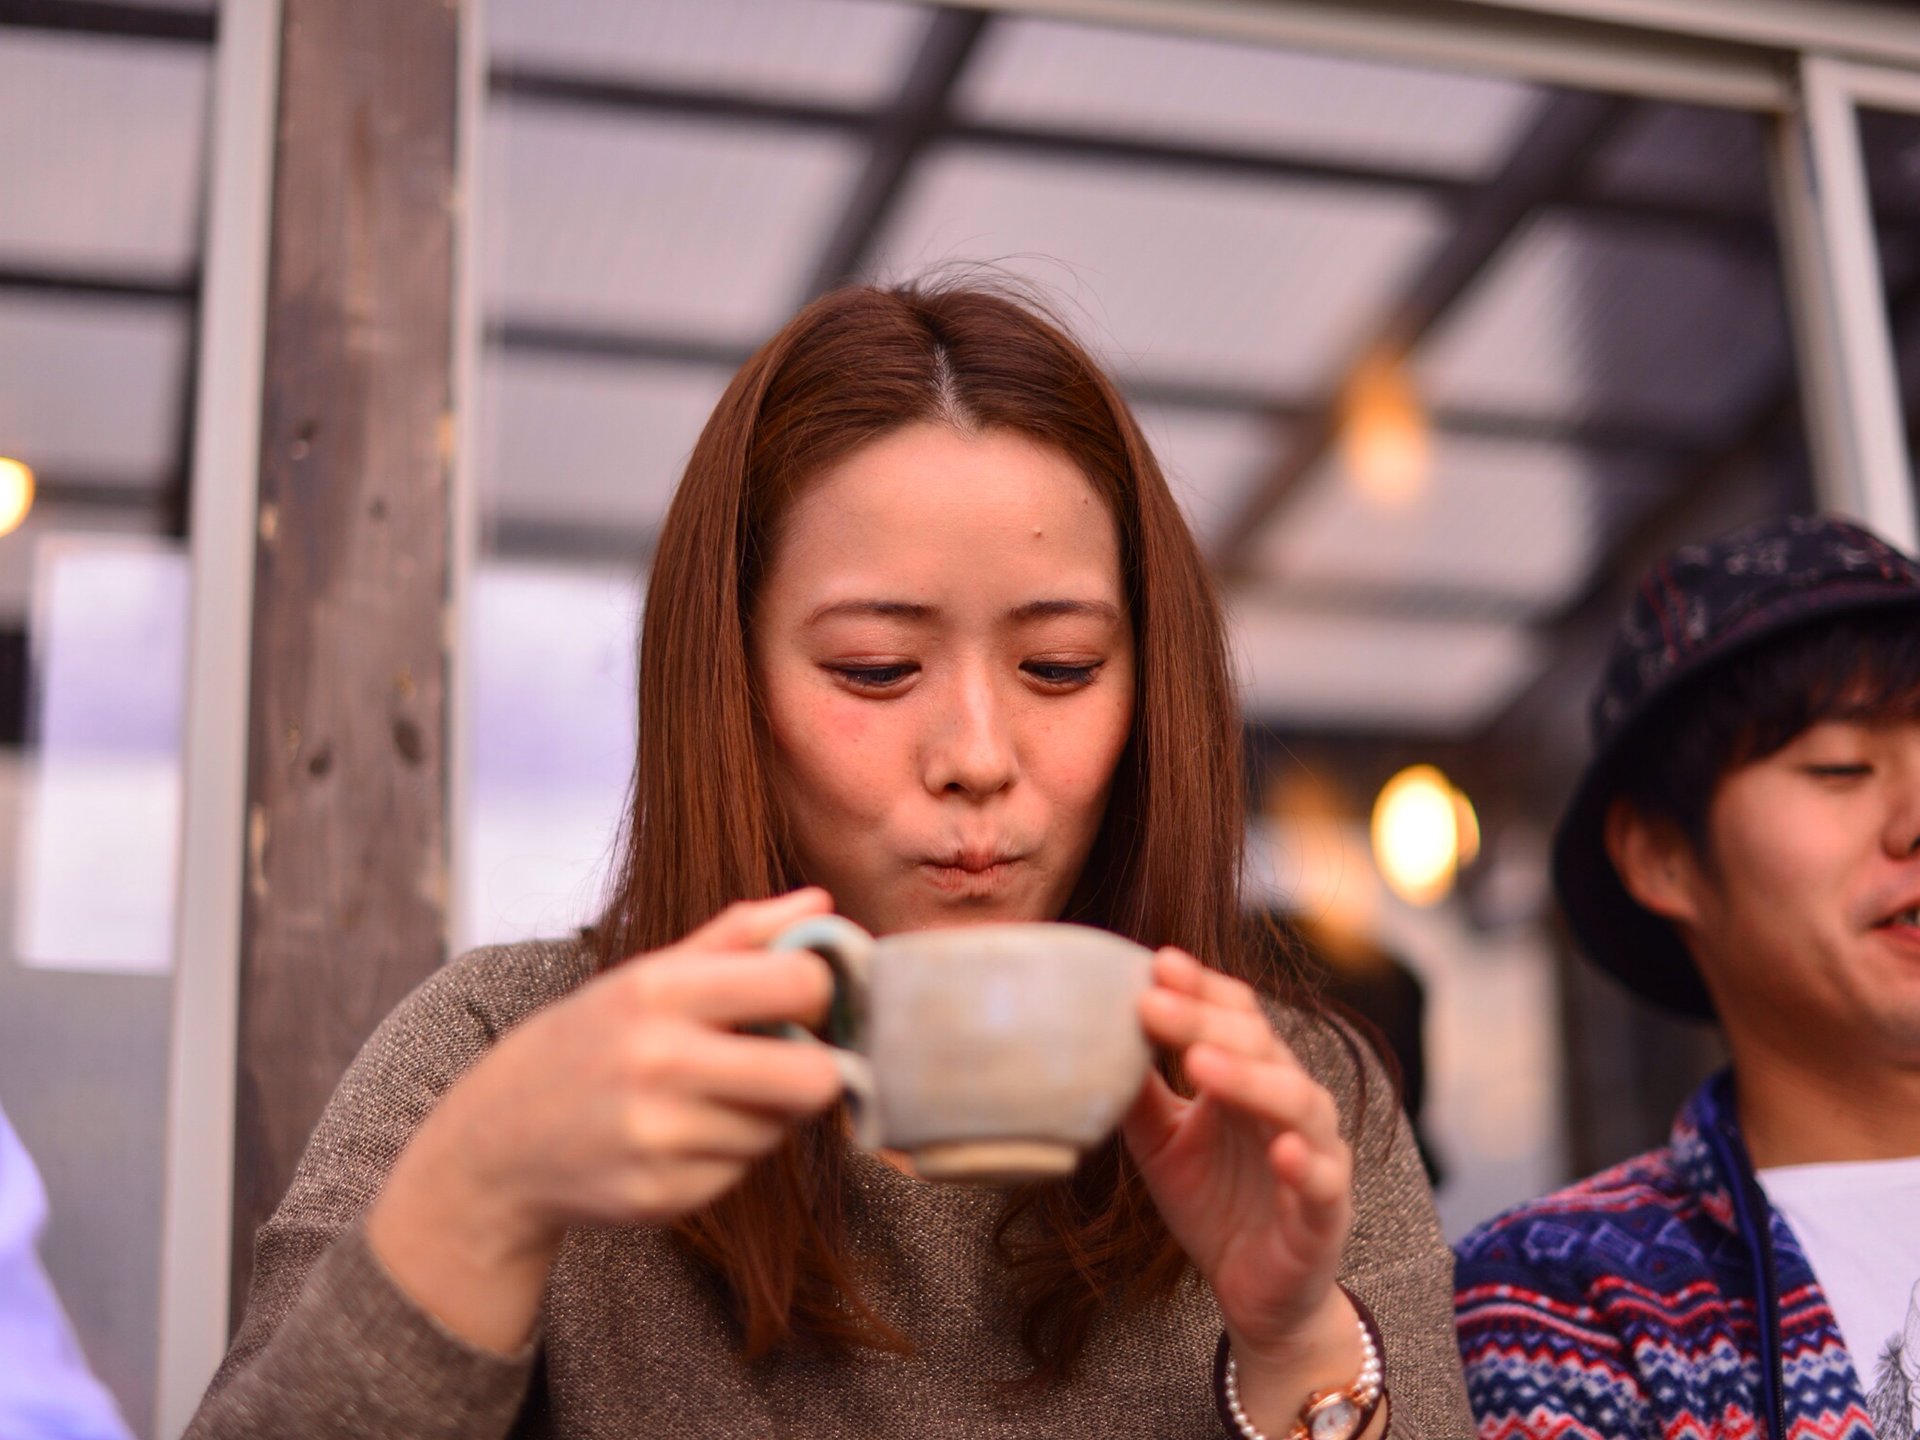 ゆったり過したい休日に。【東京都内・レトロ喫茶店11選】そうだ、喫茶店に行こう。のんびりデートにも◎